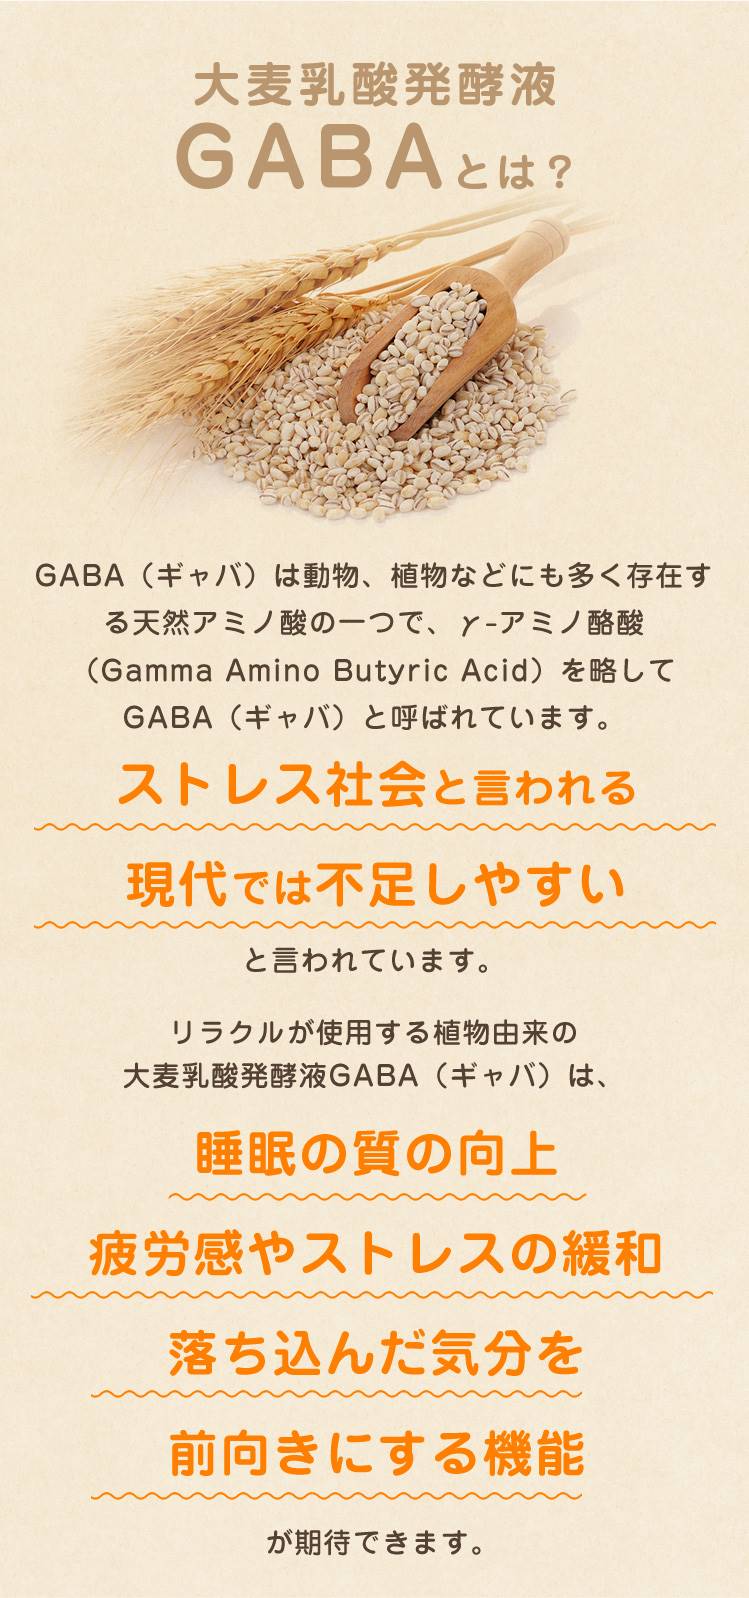 大麦乳酸発酵液GABAとは